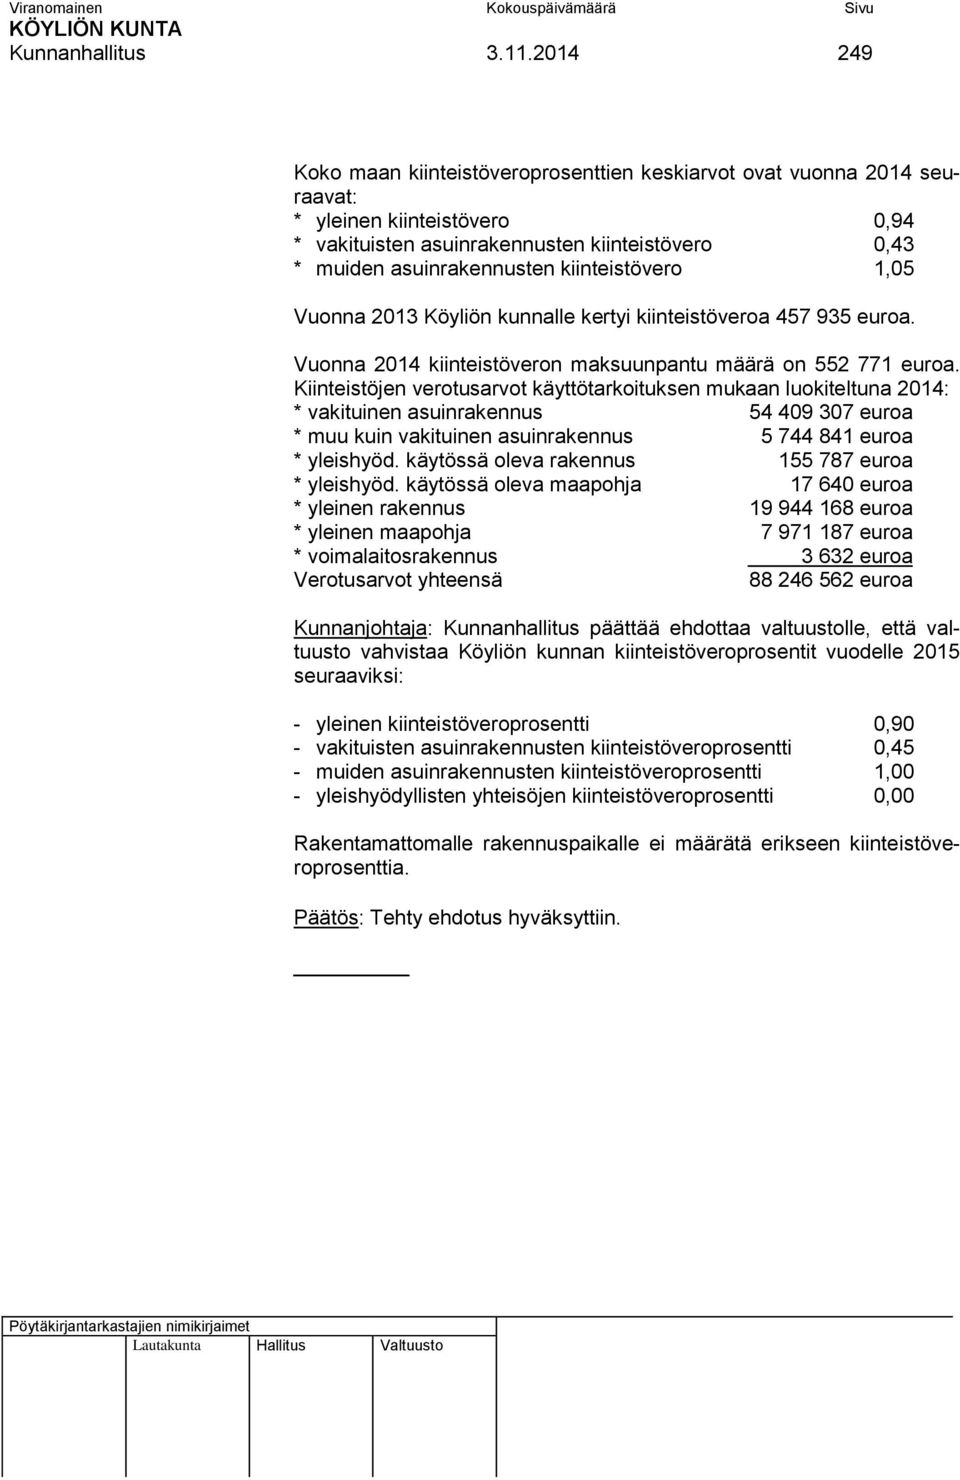 kiinteistövero 1,05 Vuonna 2013 Köyliön kunnalle kertyi kiinteistöveroa 457 935 euroa. Vuonna 2014 kiinteistöveron maksuunpantu määrä on 552 771 euroa.